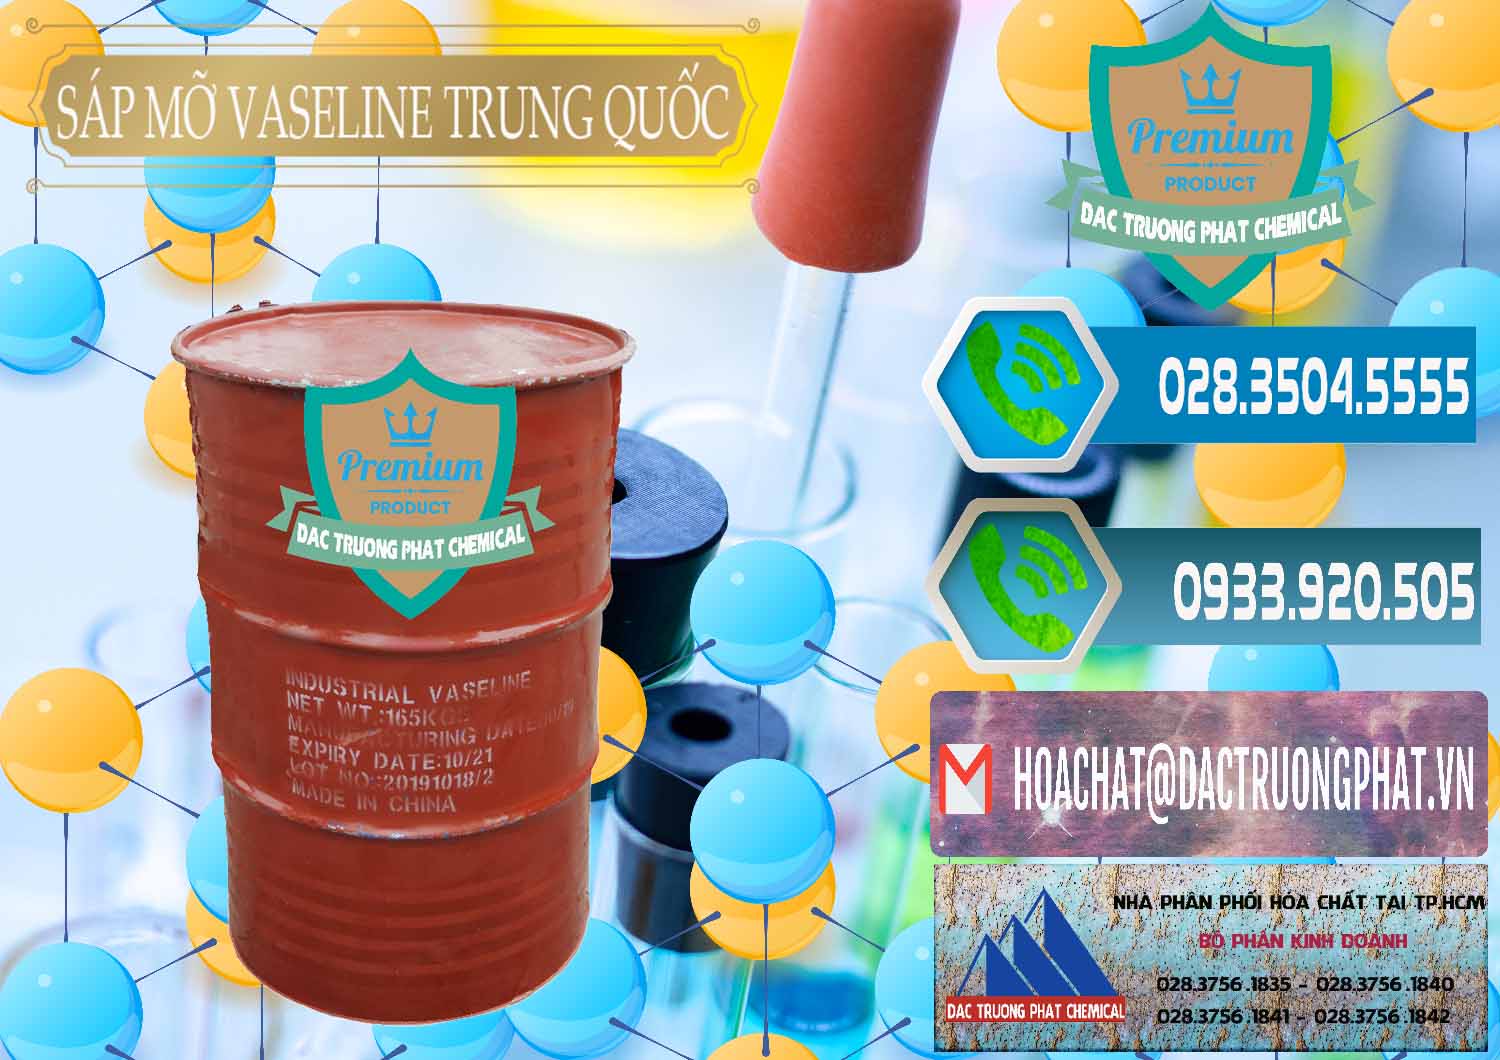 Cty chuyên bán - cung cấp Sáp Mỡ Vaseline Trung Quốc China - 0122 - Cty phân phối _ bán hóa chất tại TP.HCM - congtyhoachat.net